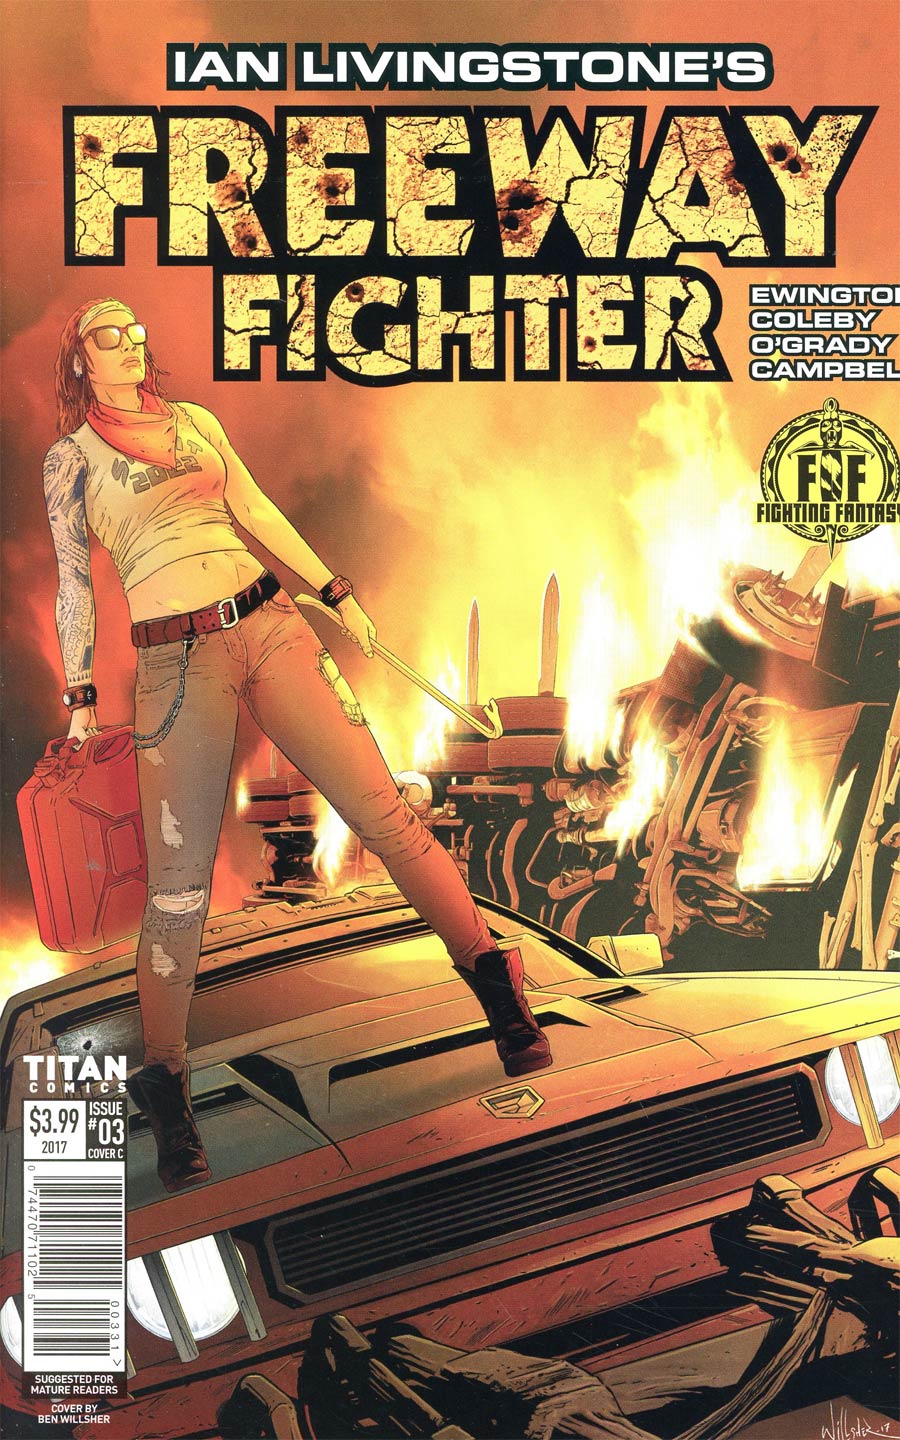 Ian Livingstones Freeway Fighter #3 Cover C Variant Ben Willsher Cover